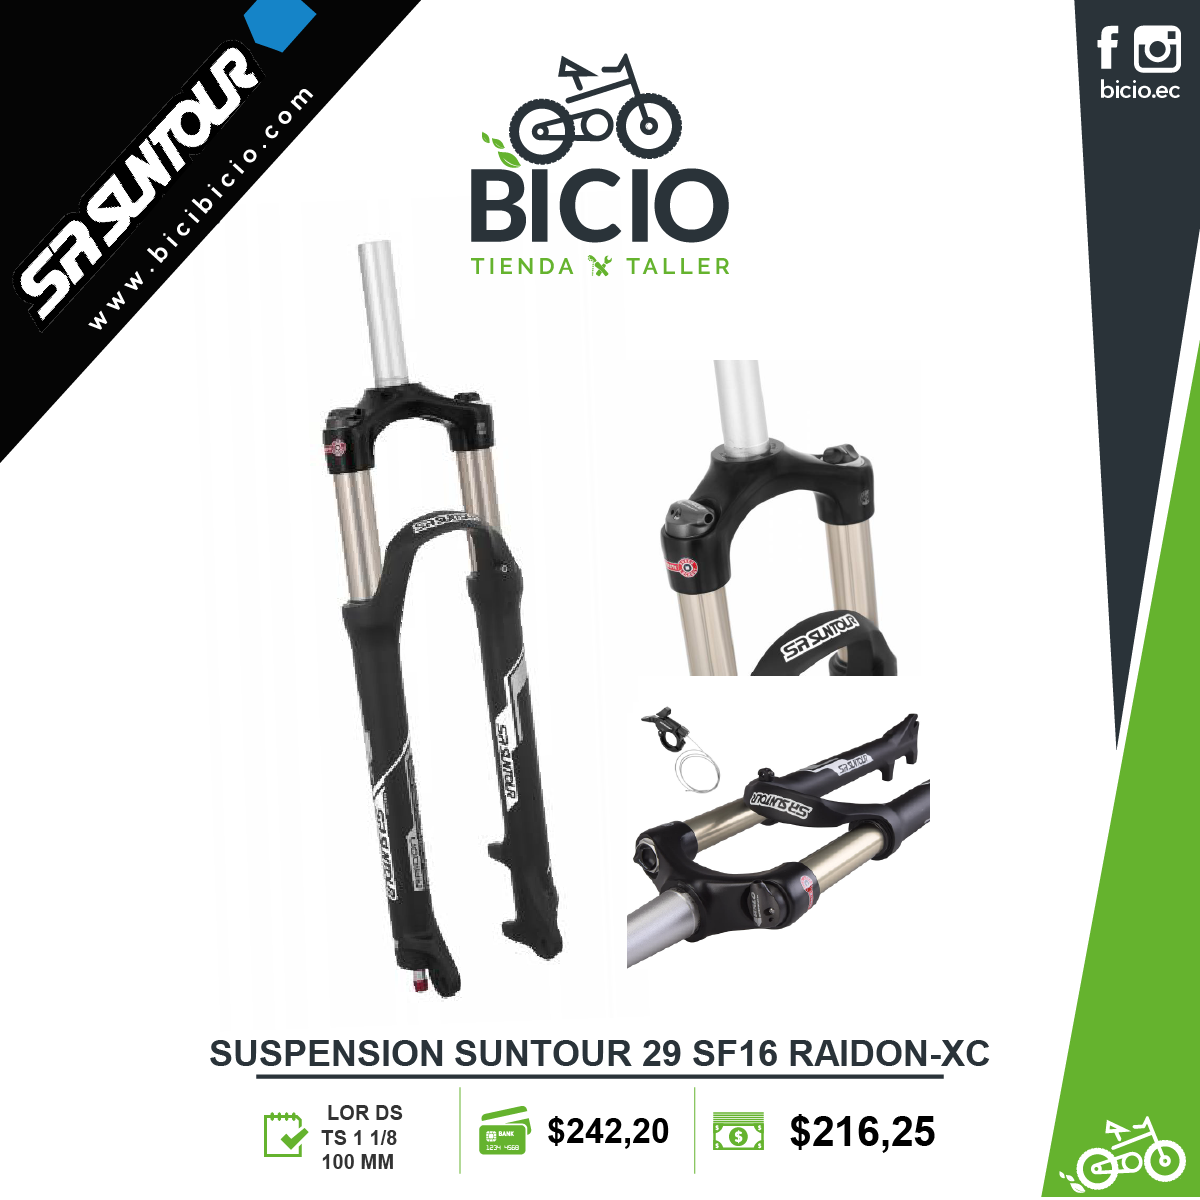 SR Suntour Raidon XC - Bicio tienda - de bicicletas